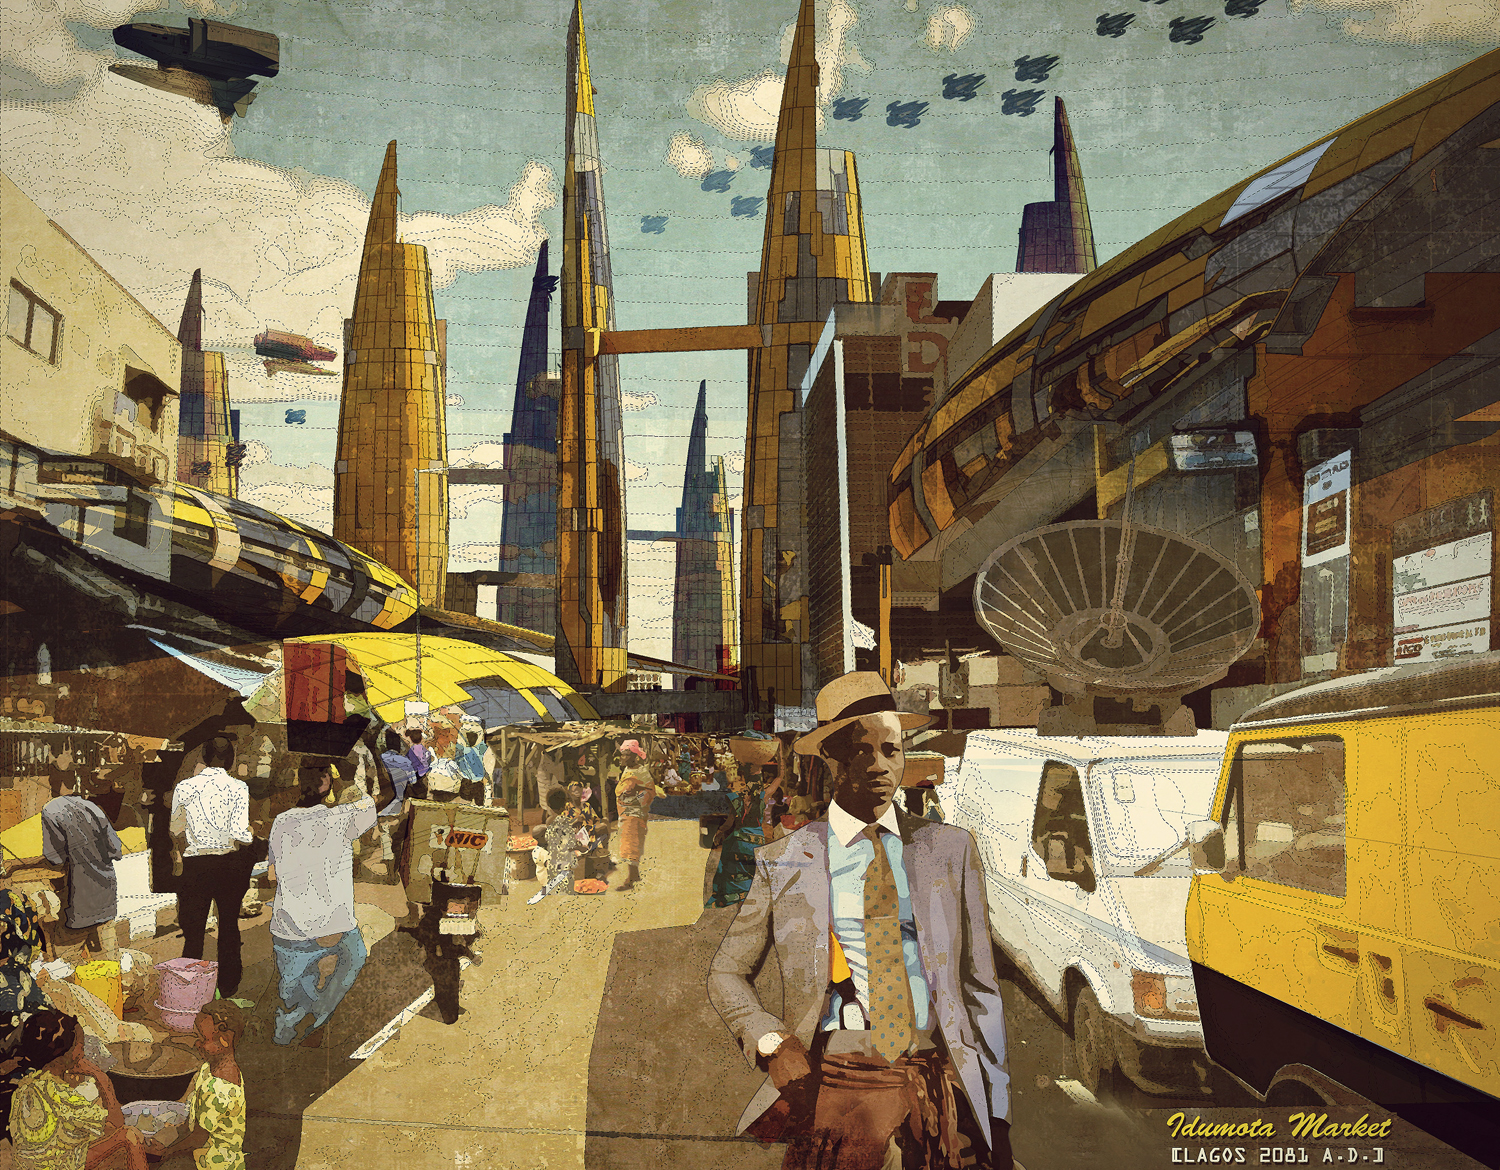 Ikiré Jones Our Africa 2081 A.D., 2014. Idumota Market, Lagos 2081 A.D.